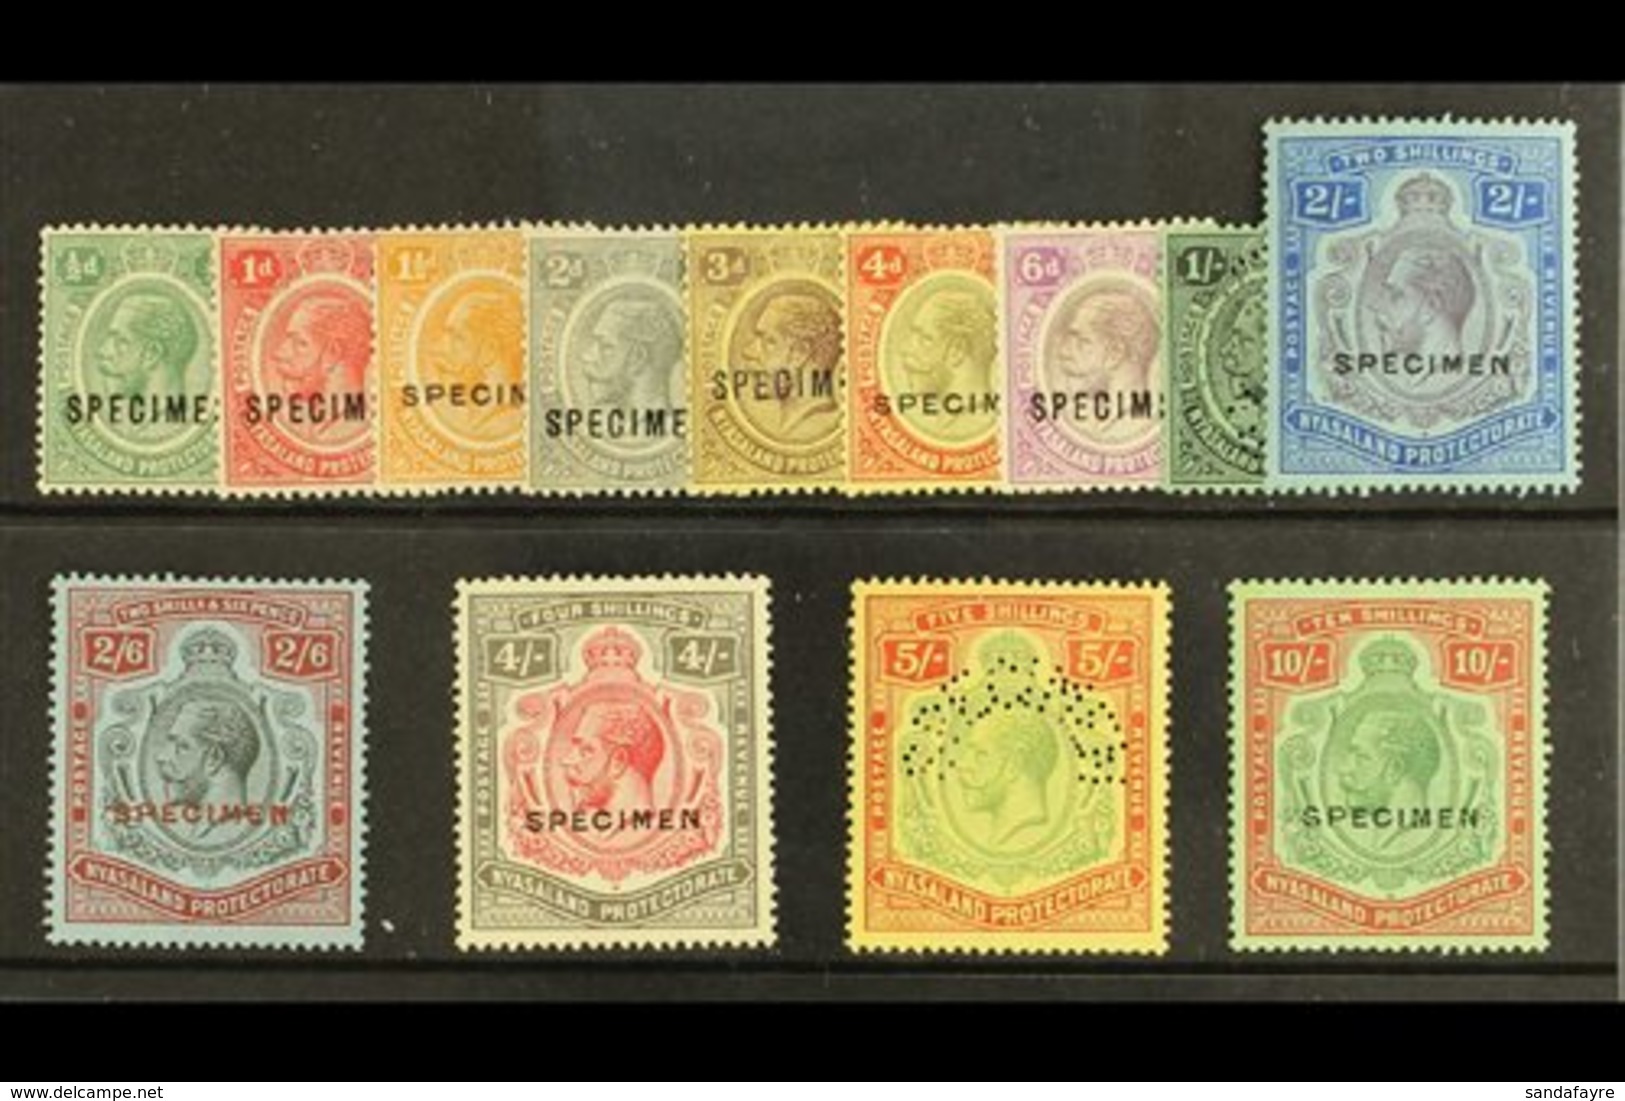 1921 Geo V Complete Set To 10s, Wmk Script CA, Overprinted "Specimen", SG 100/13, Very Fine Mint. (13 Stamps) For More I - Nyasaland (1907-1953)